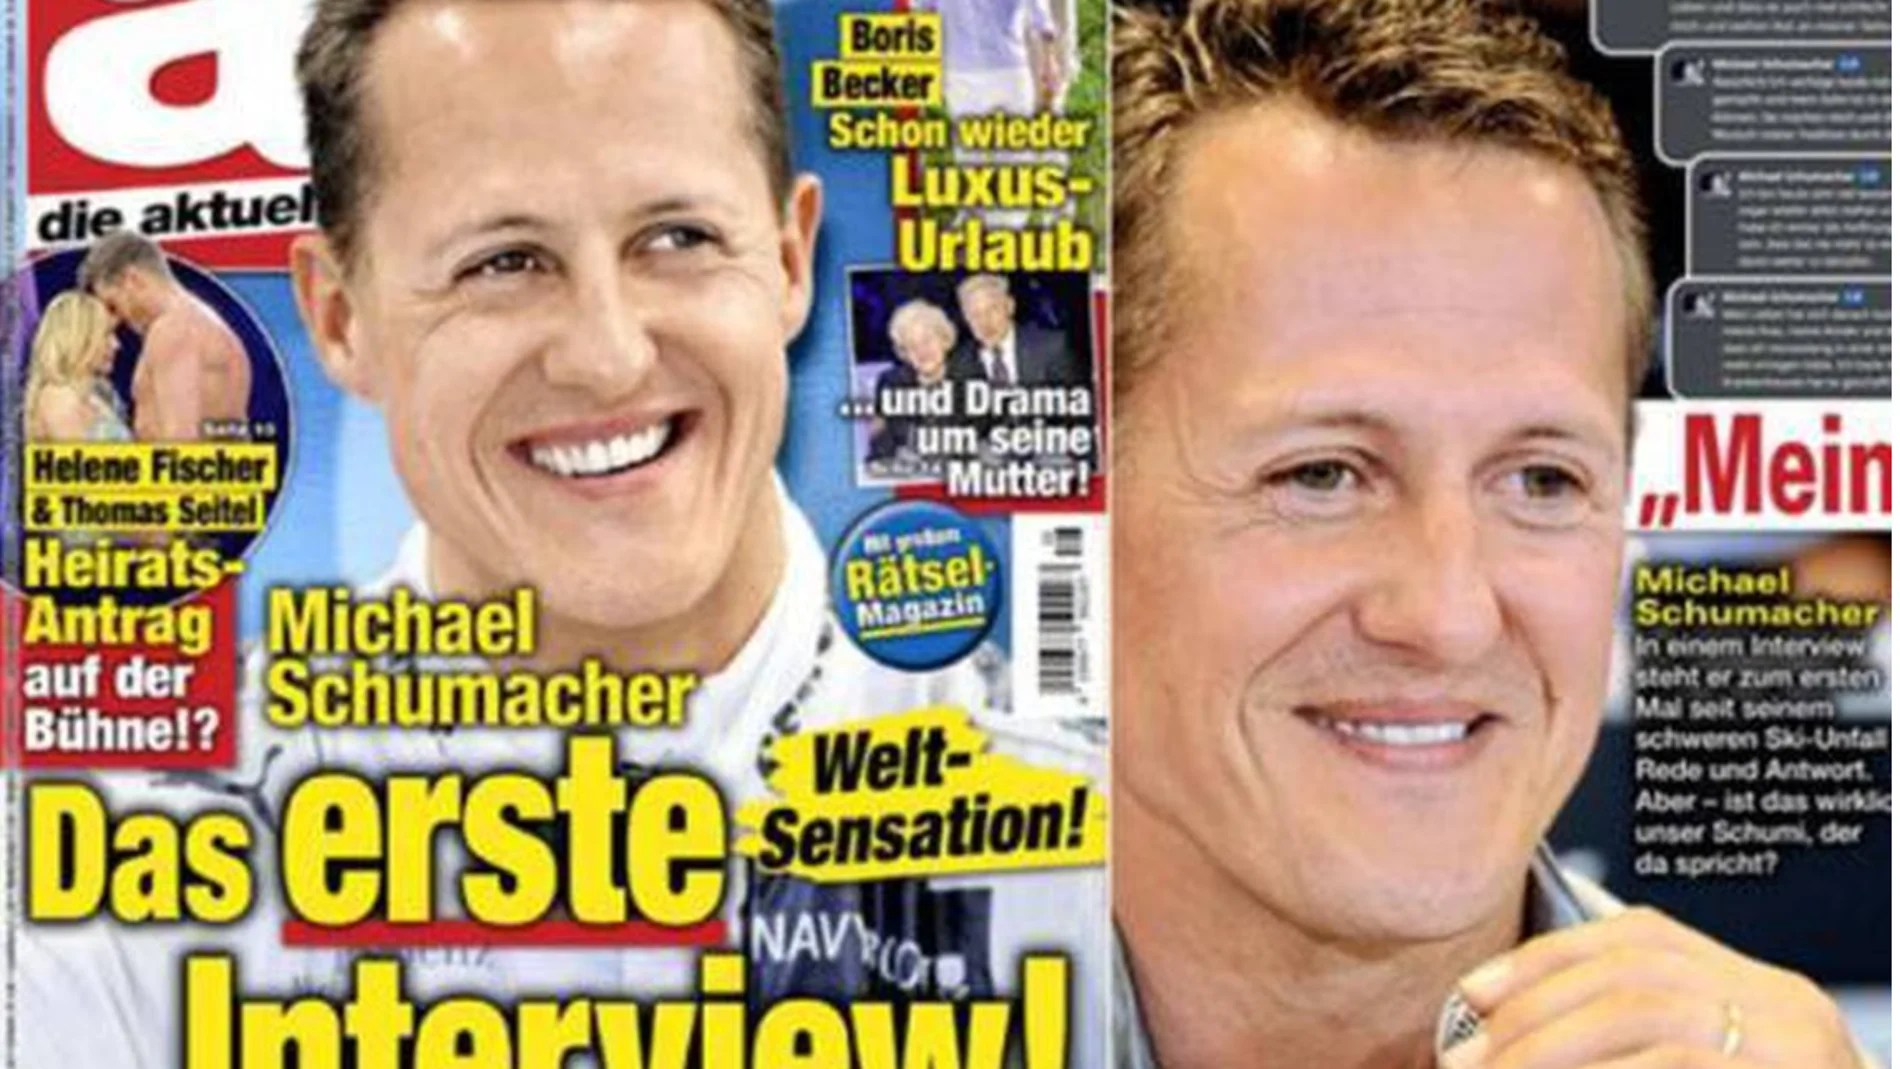 Escándalo mundial por una entrevista falsa a Michael Schumacher realizada con IA: “Mi vida ha cambiado…”